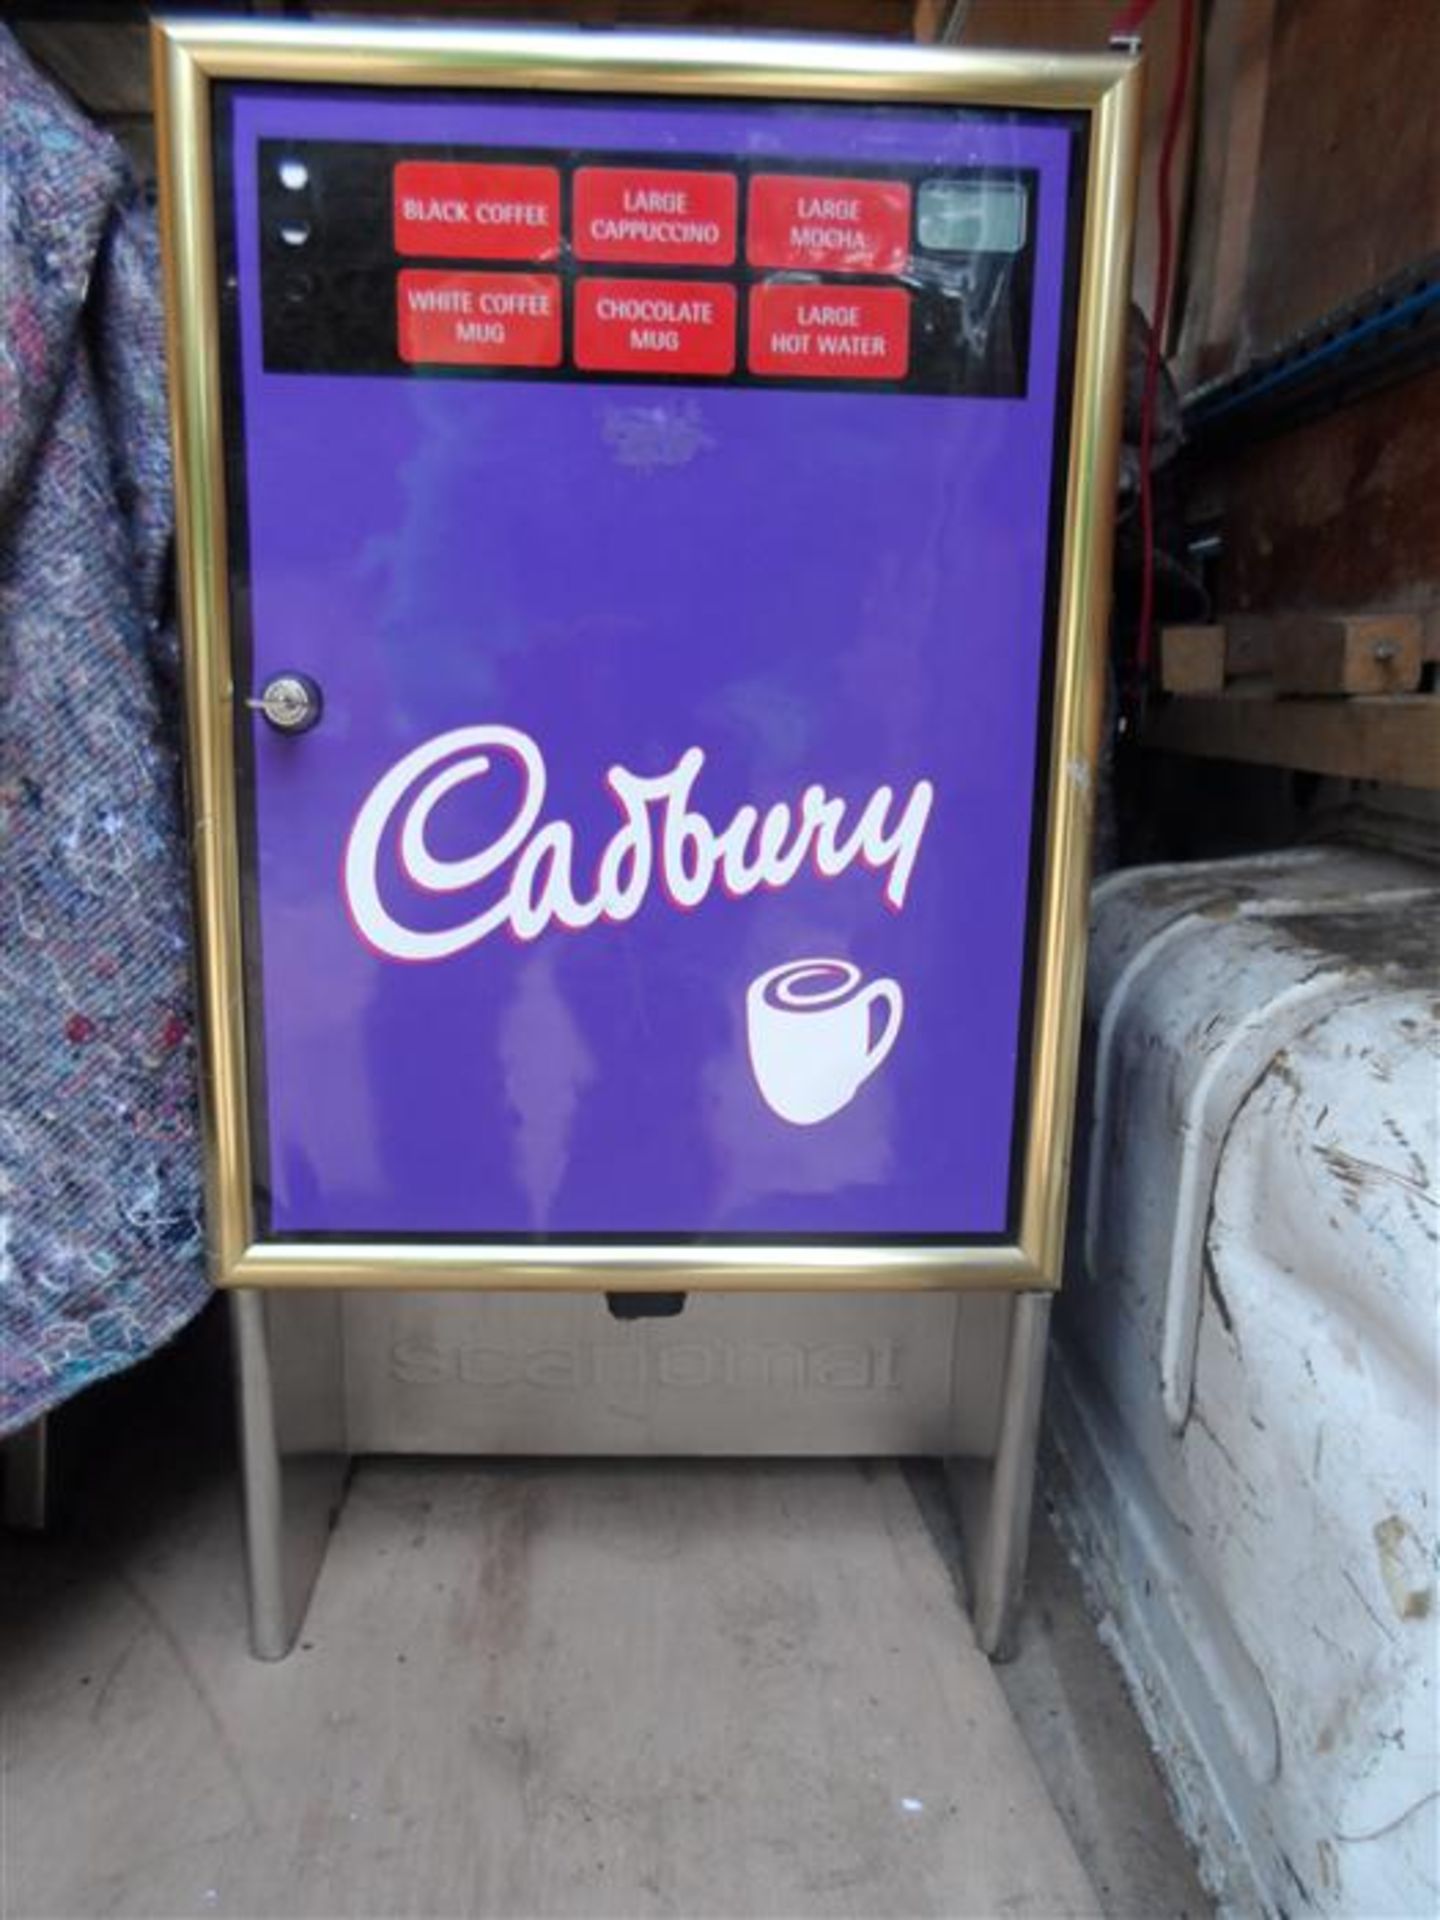 Scanomat Cadburys Hot Drinks Machine